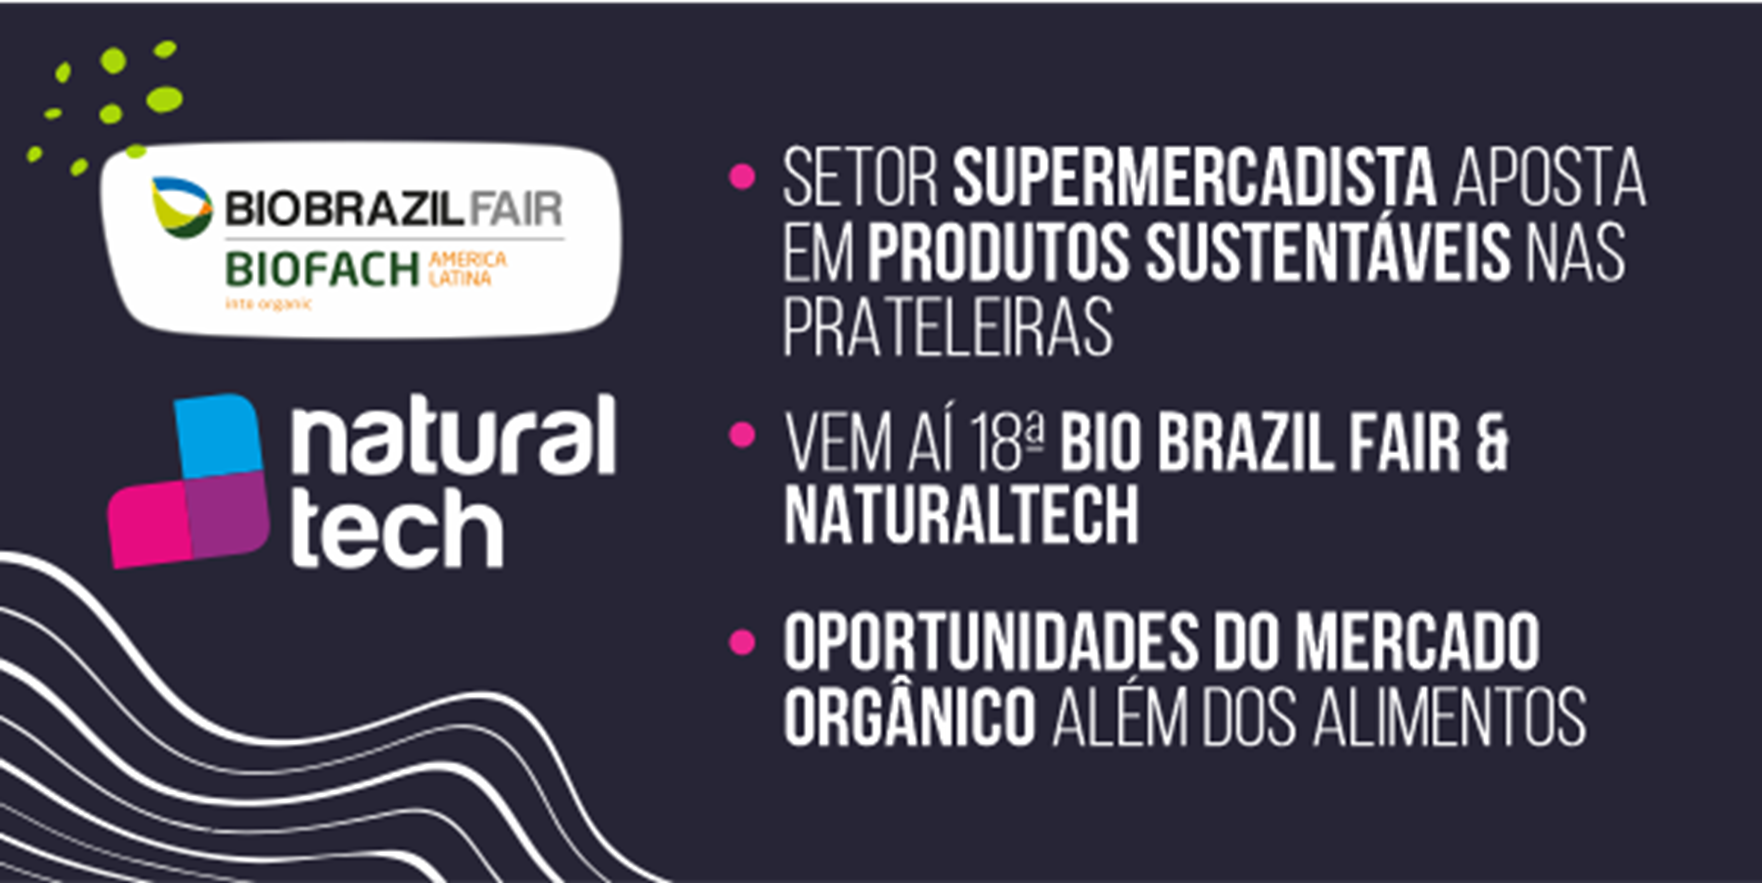 Featured image for “Setor Supermercadista aposta em produtos sustentáveis nas prateleiras”